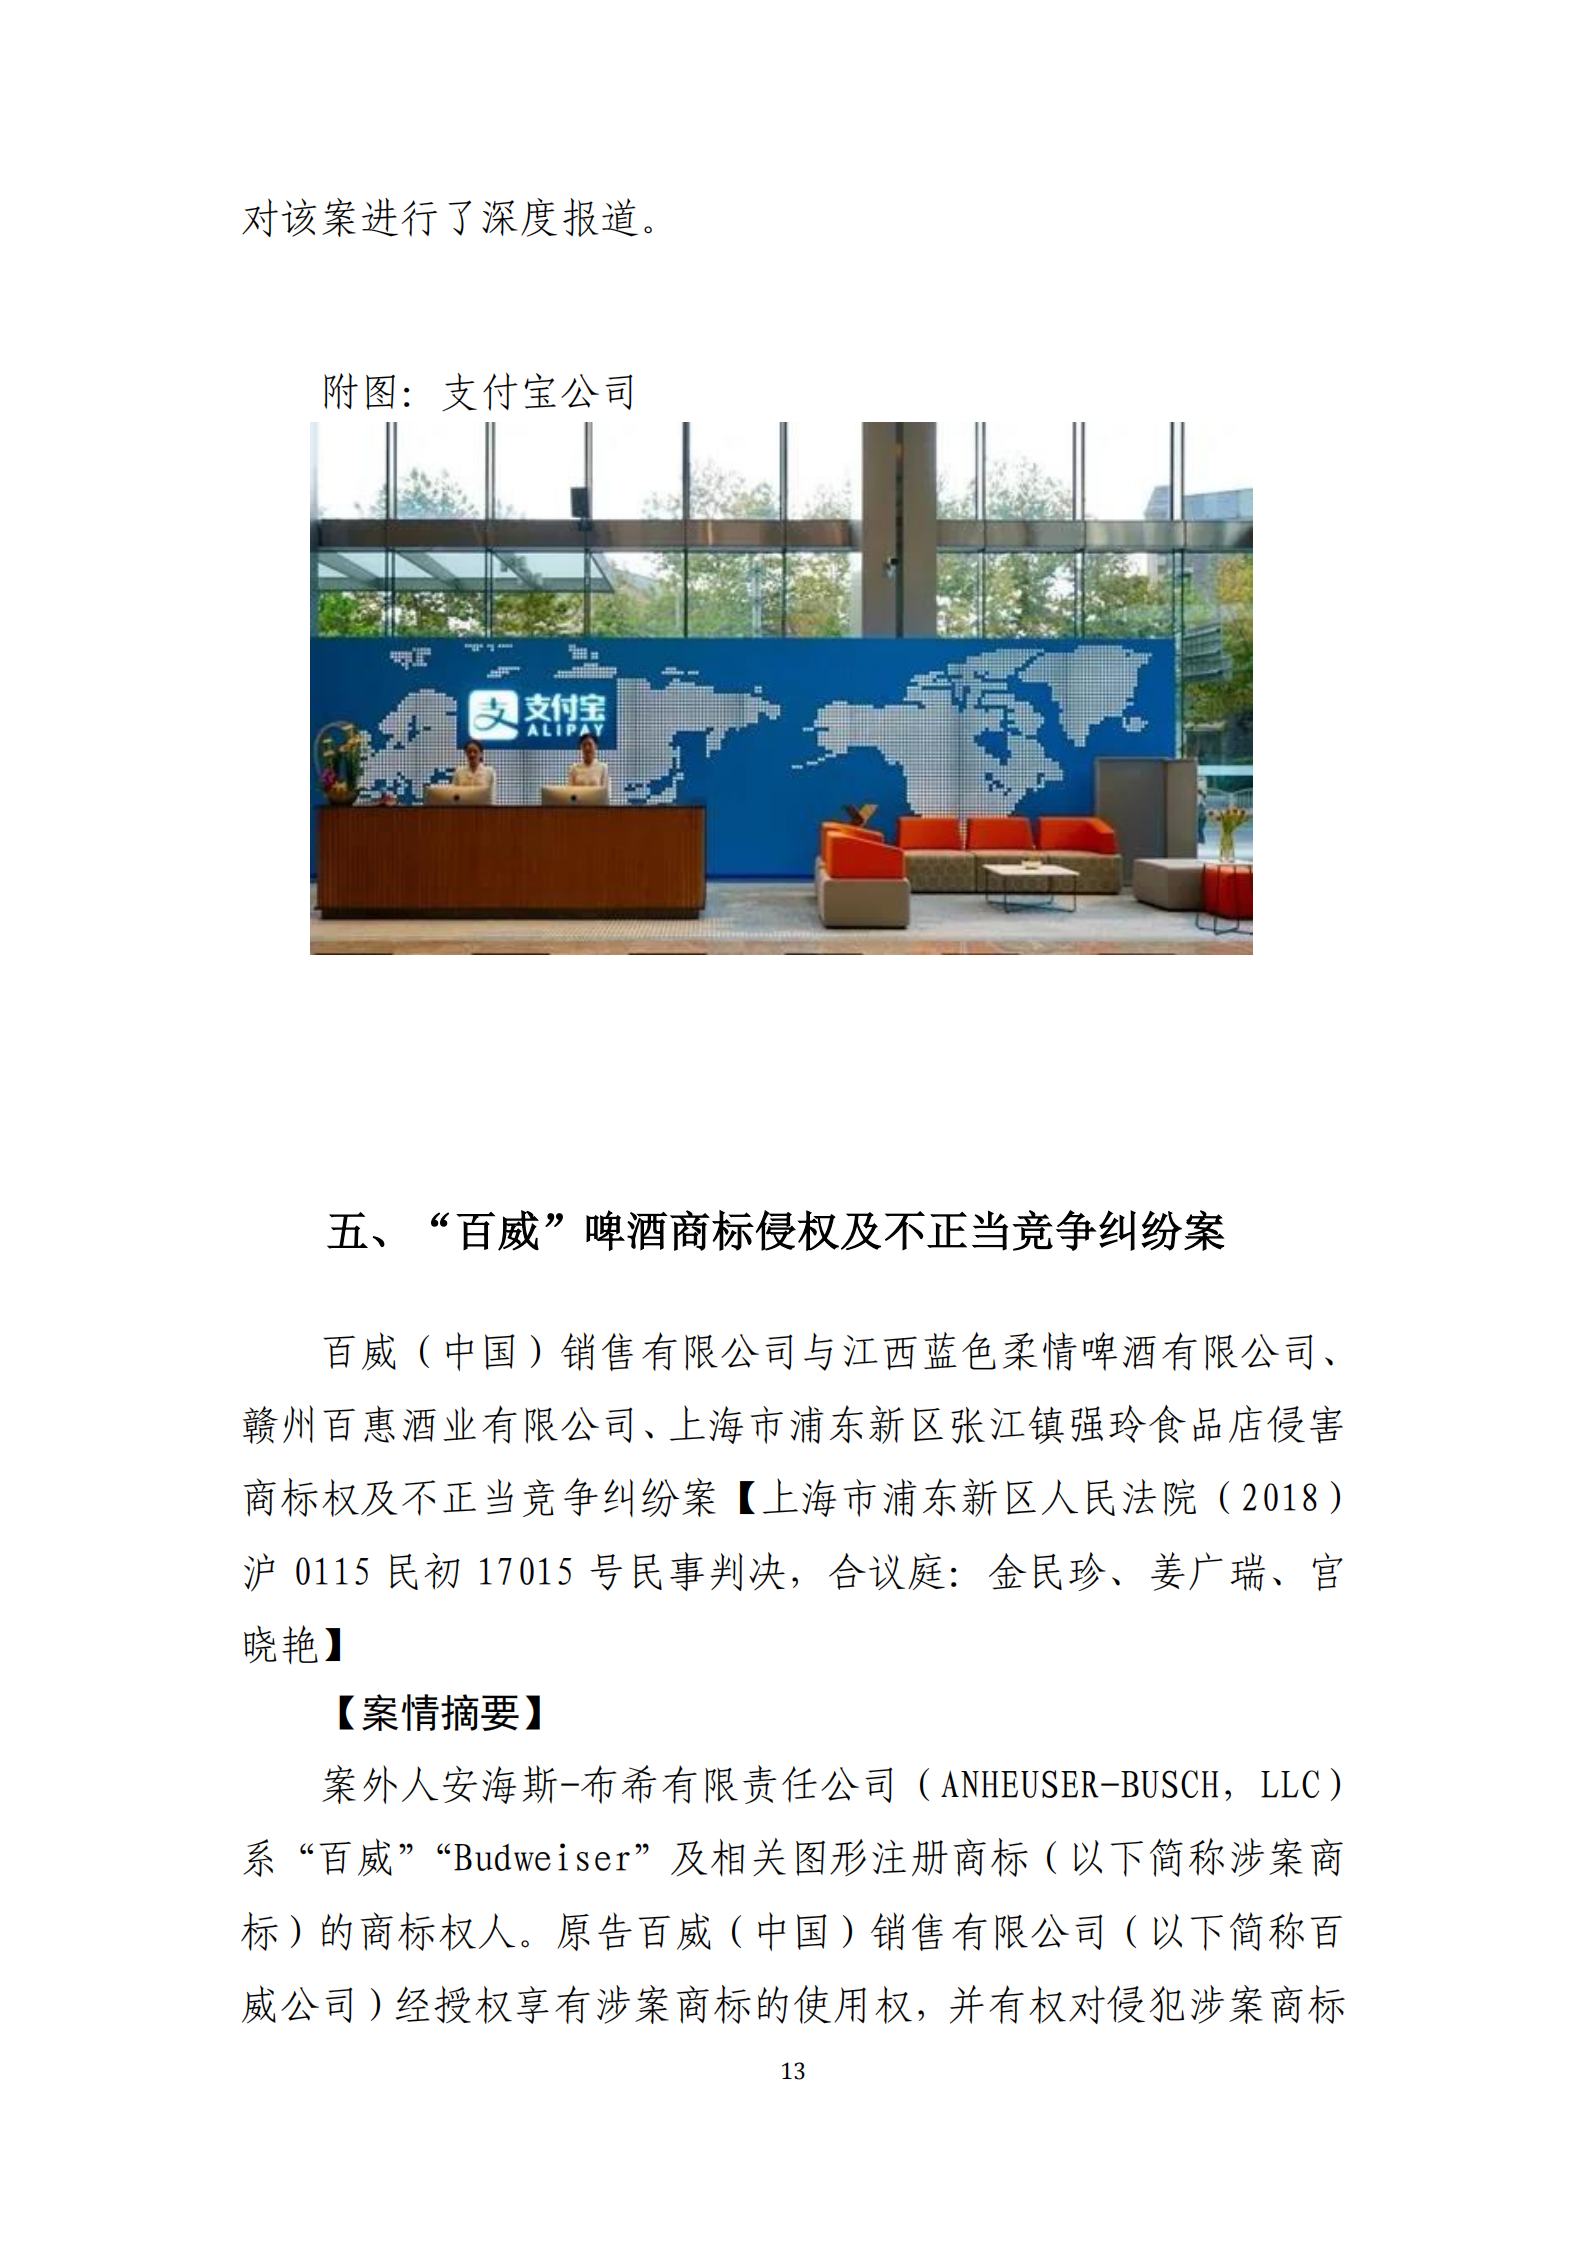 2020年度上海法院知识产权司法保护十大案件